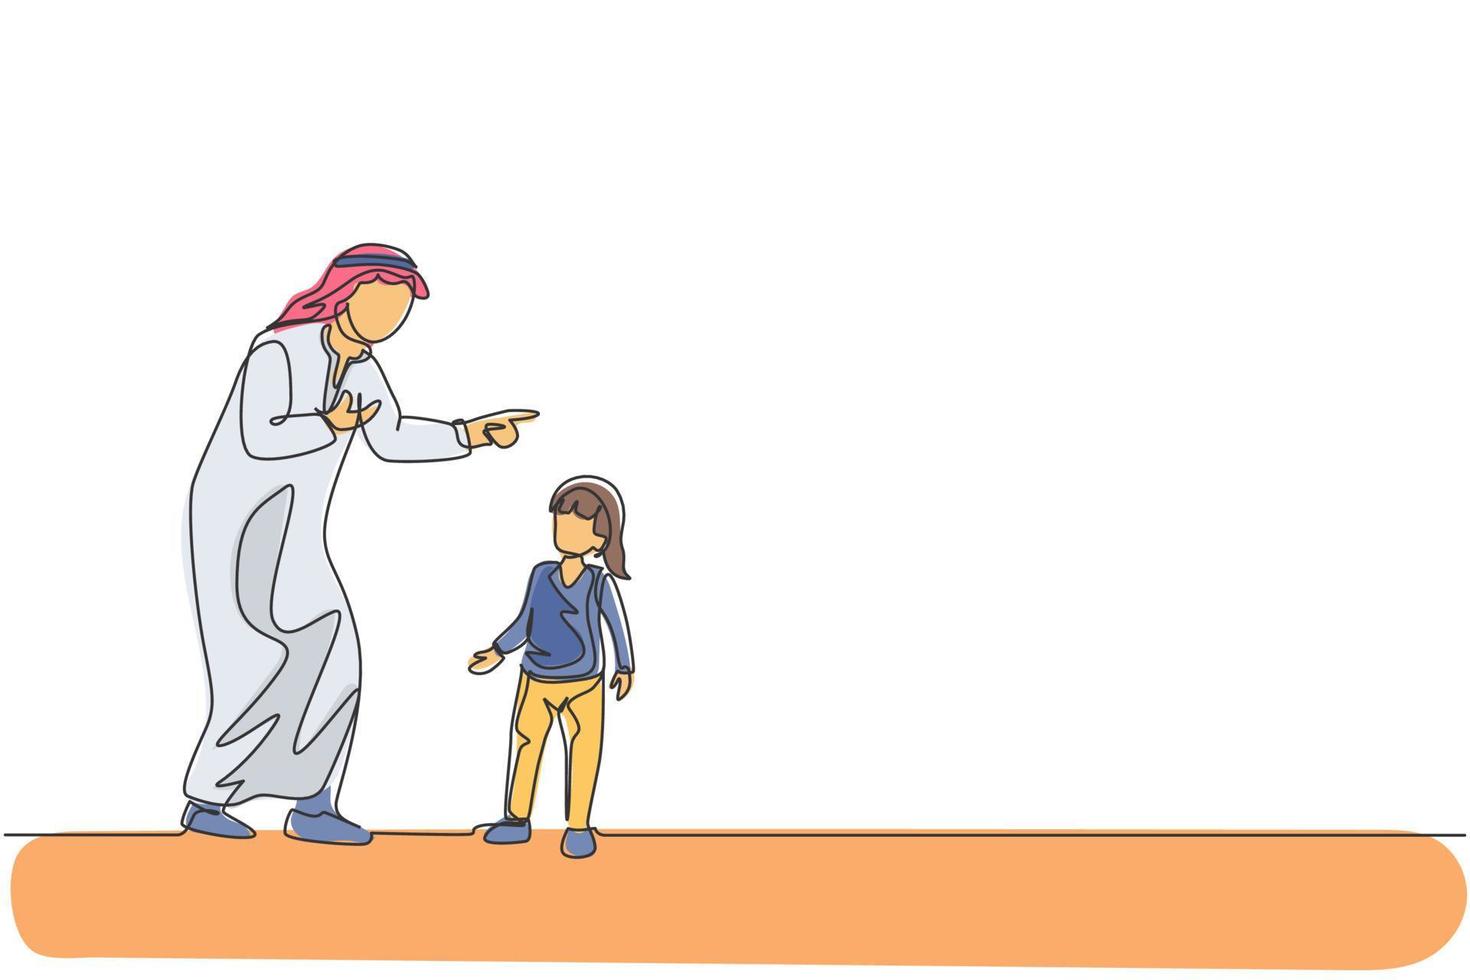 um desenho de linha contínua do jovem pai árabe dá uma conversa e conselhos sábios para sua filha. conceito de família amorosa muçulmana islâmica feliz. ilustração em vetor desenho dinâmico de desenho de linha única